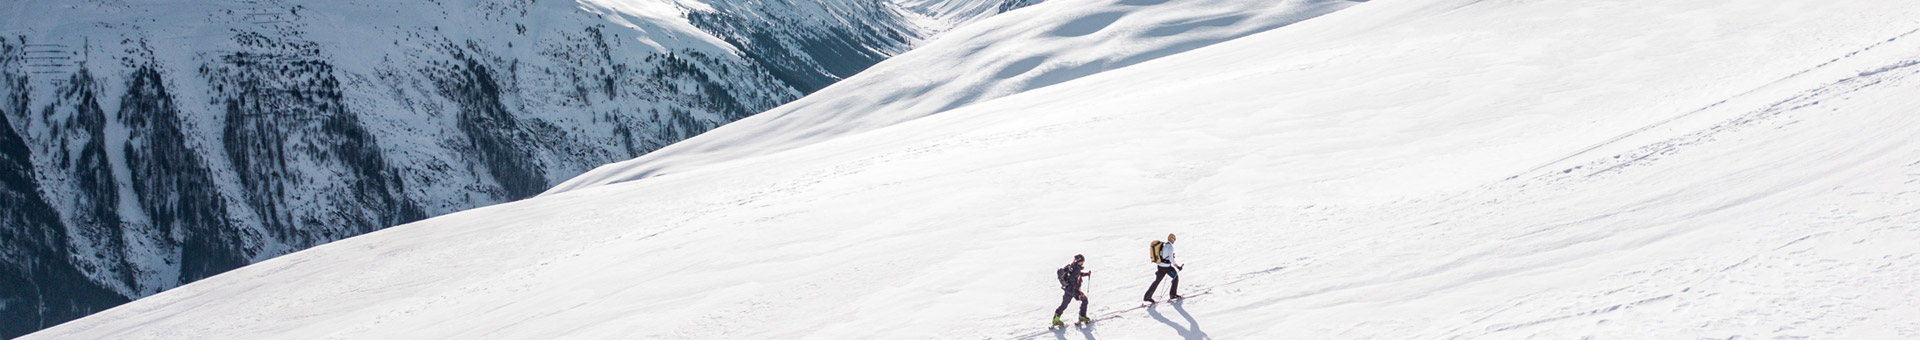 Llogar esquís Ordino – Esports Les Planes